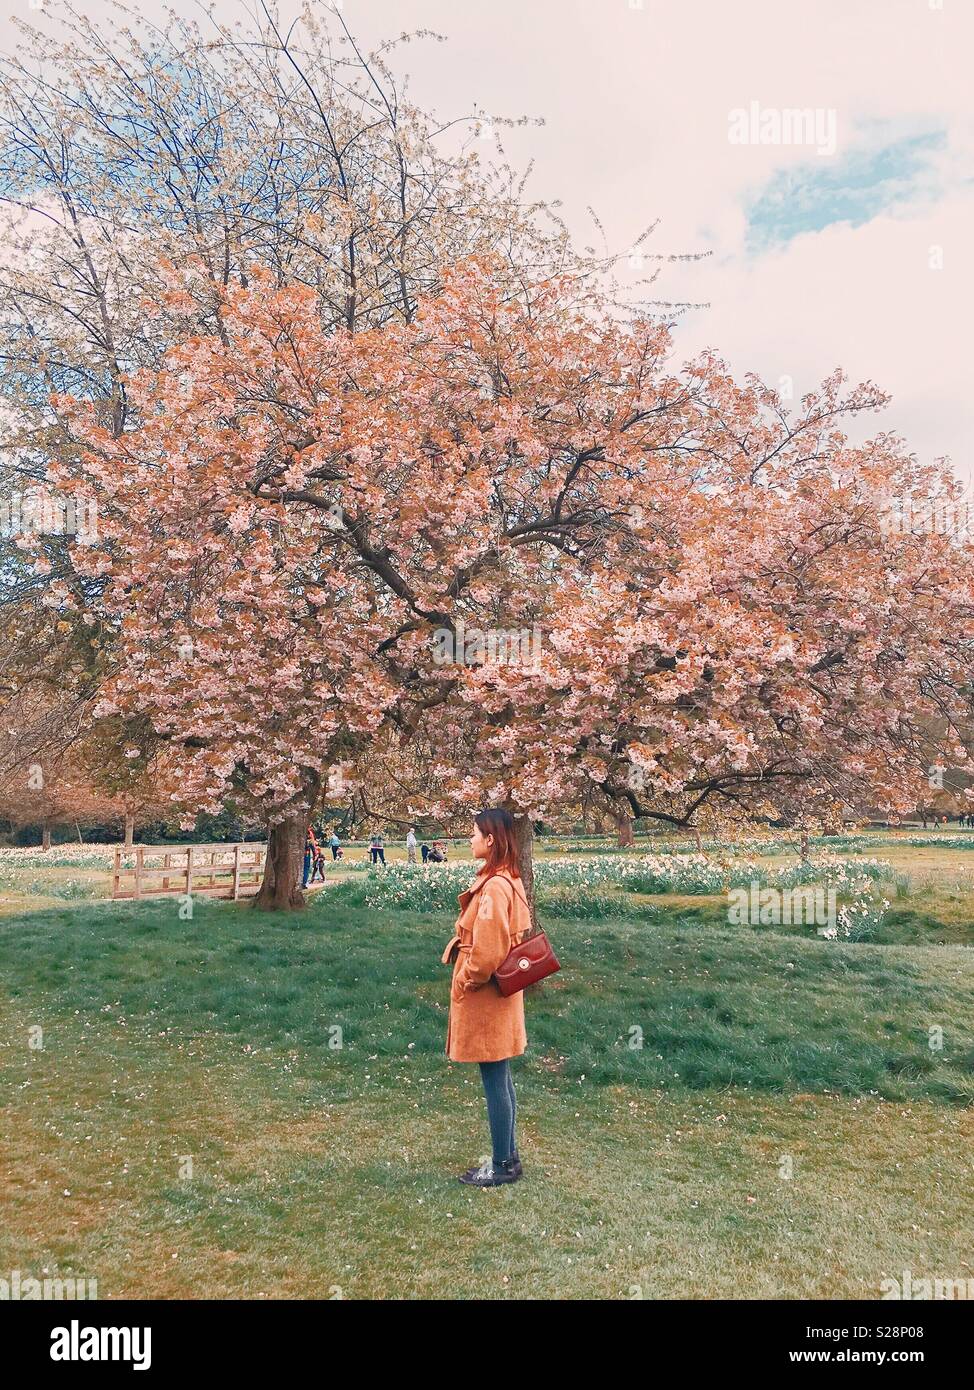 Una ragazza / donna / lady portando un vintage sacchetto rosso apprezzando i bellissimi fiori rosa in un parco o giardino in primavera, foto scattata in Temple Newsam, Leeds, West Yorkshire, Inghilterra, Regno Unito Foto Stock